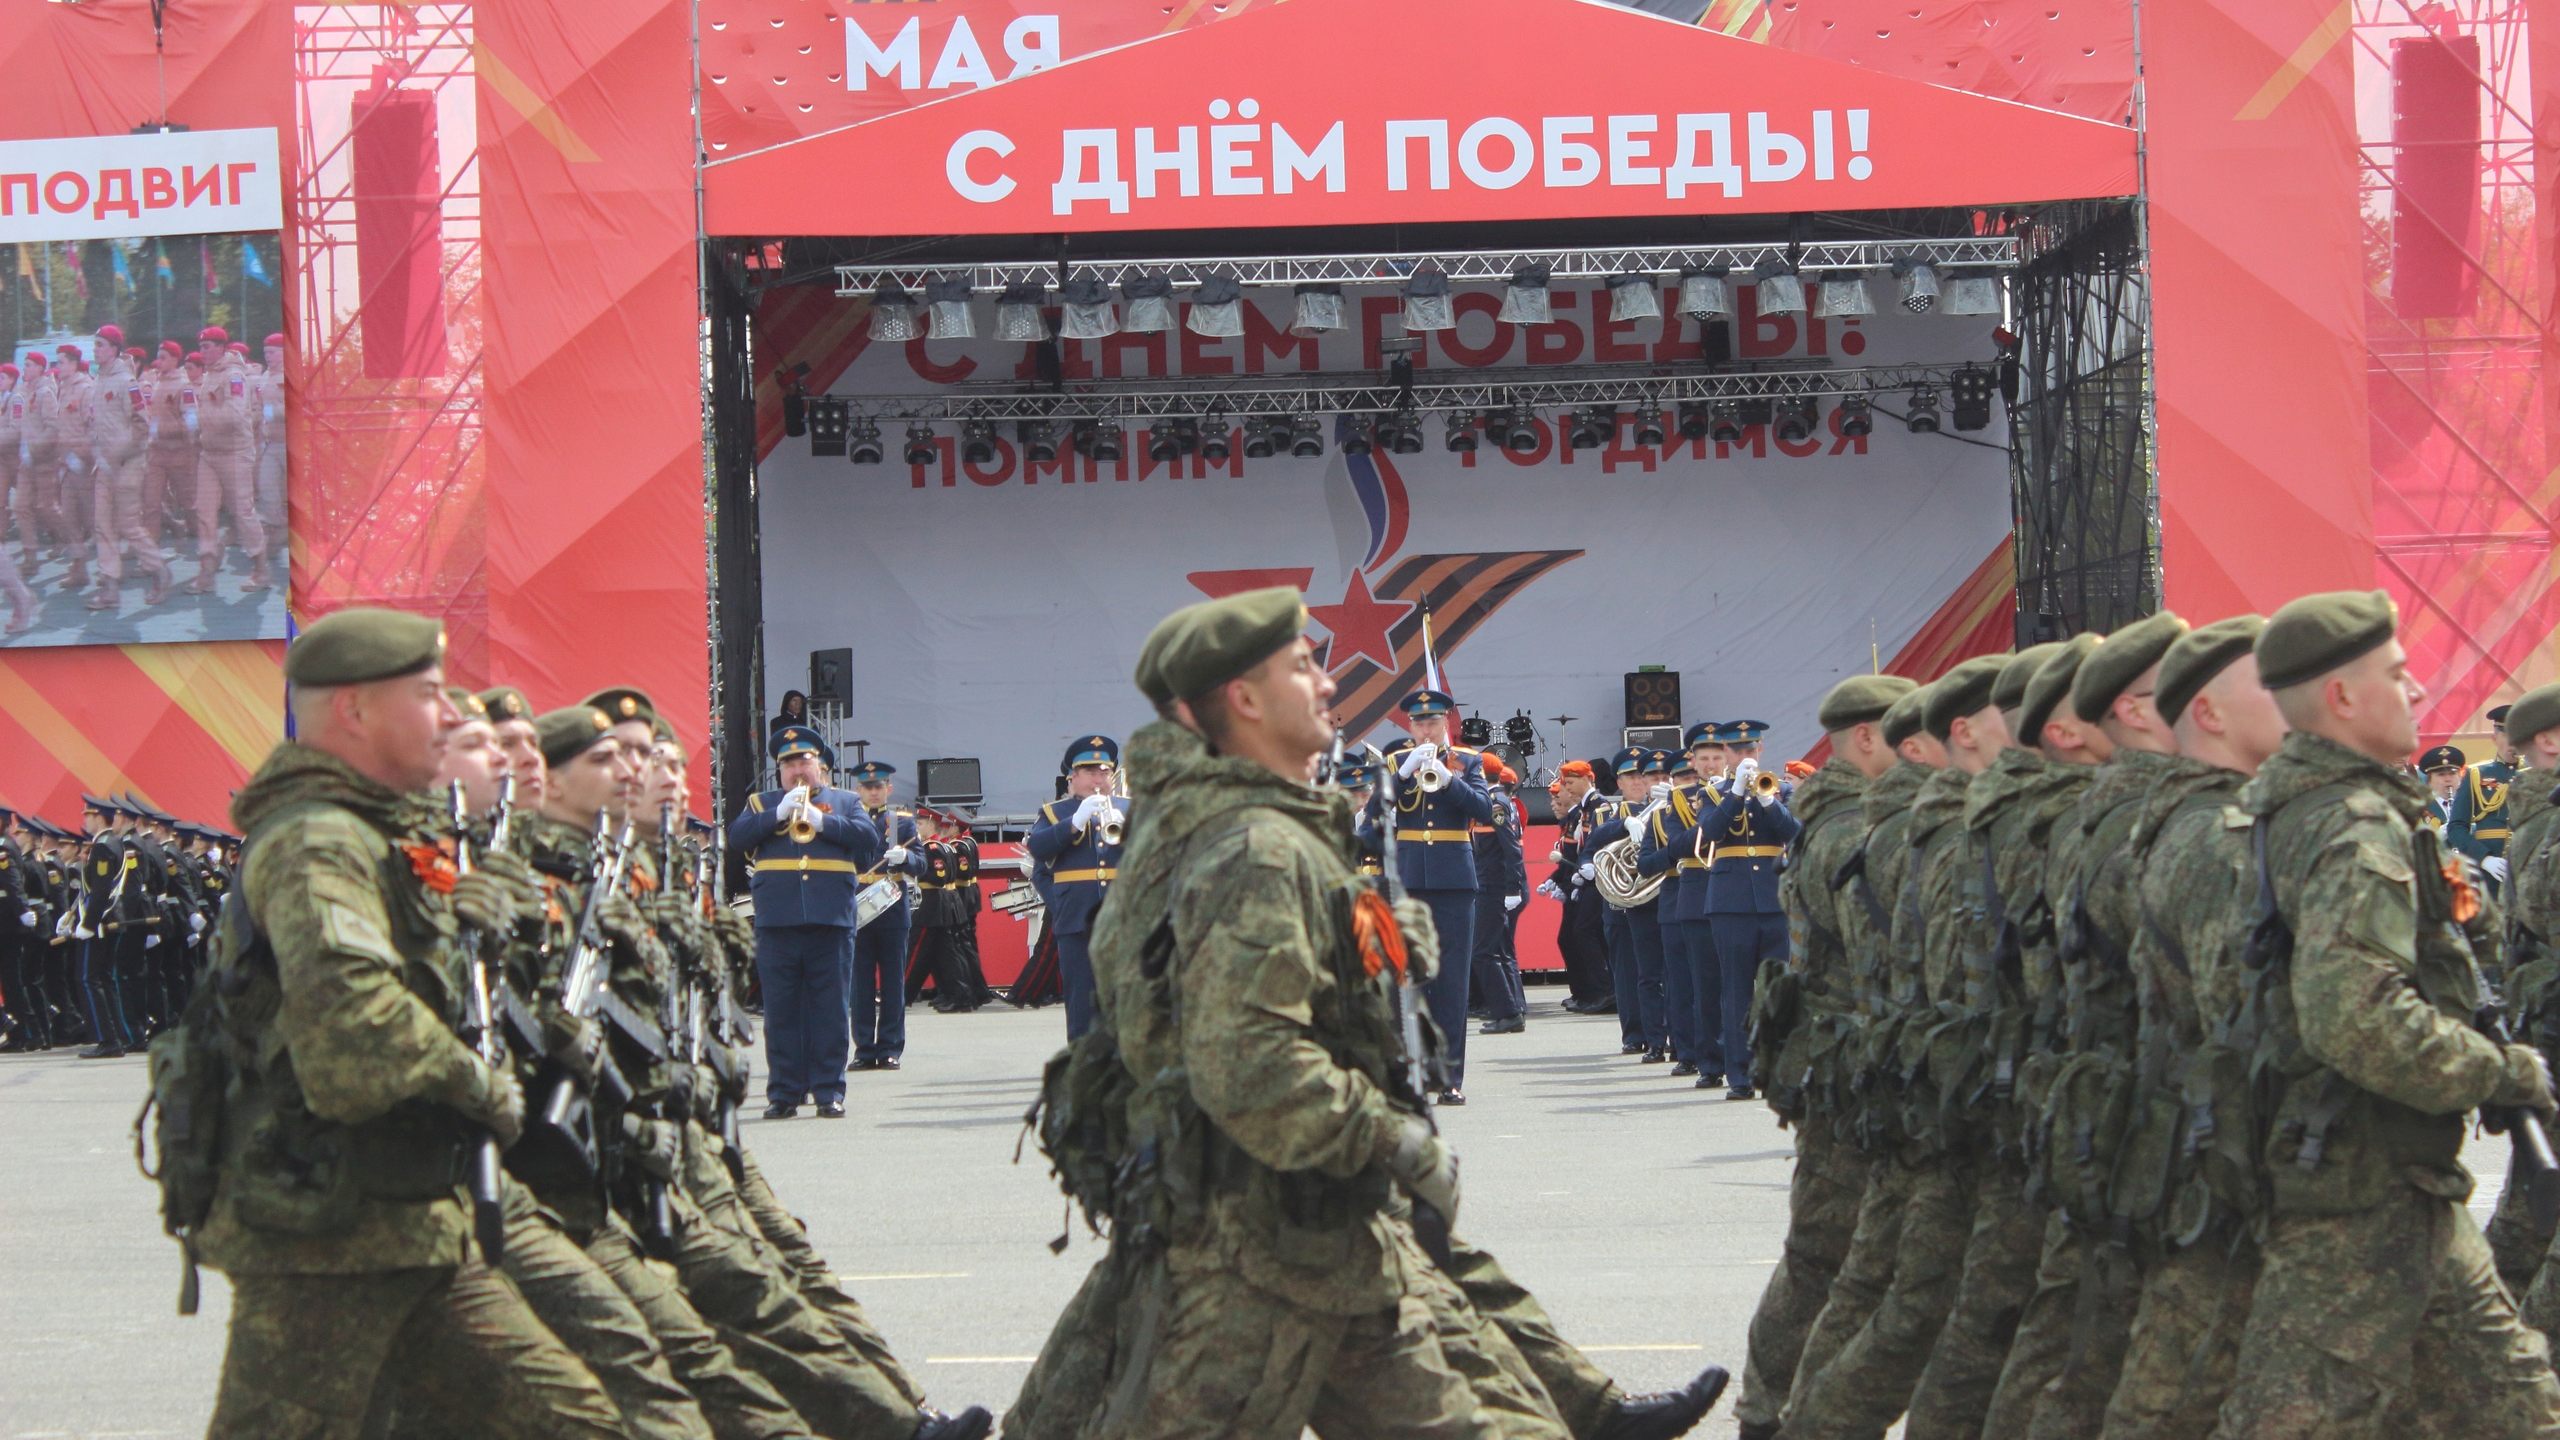 Снег, сводный хор, поздравление Президента: Ульяновск празднует День Победы 